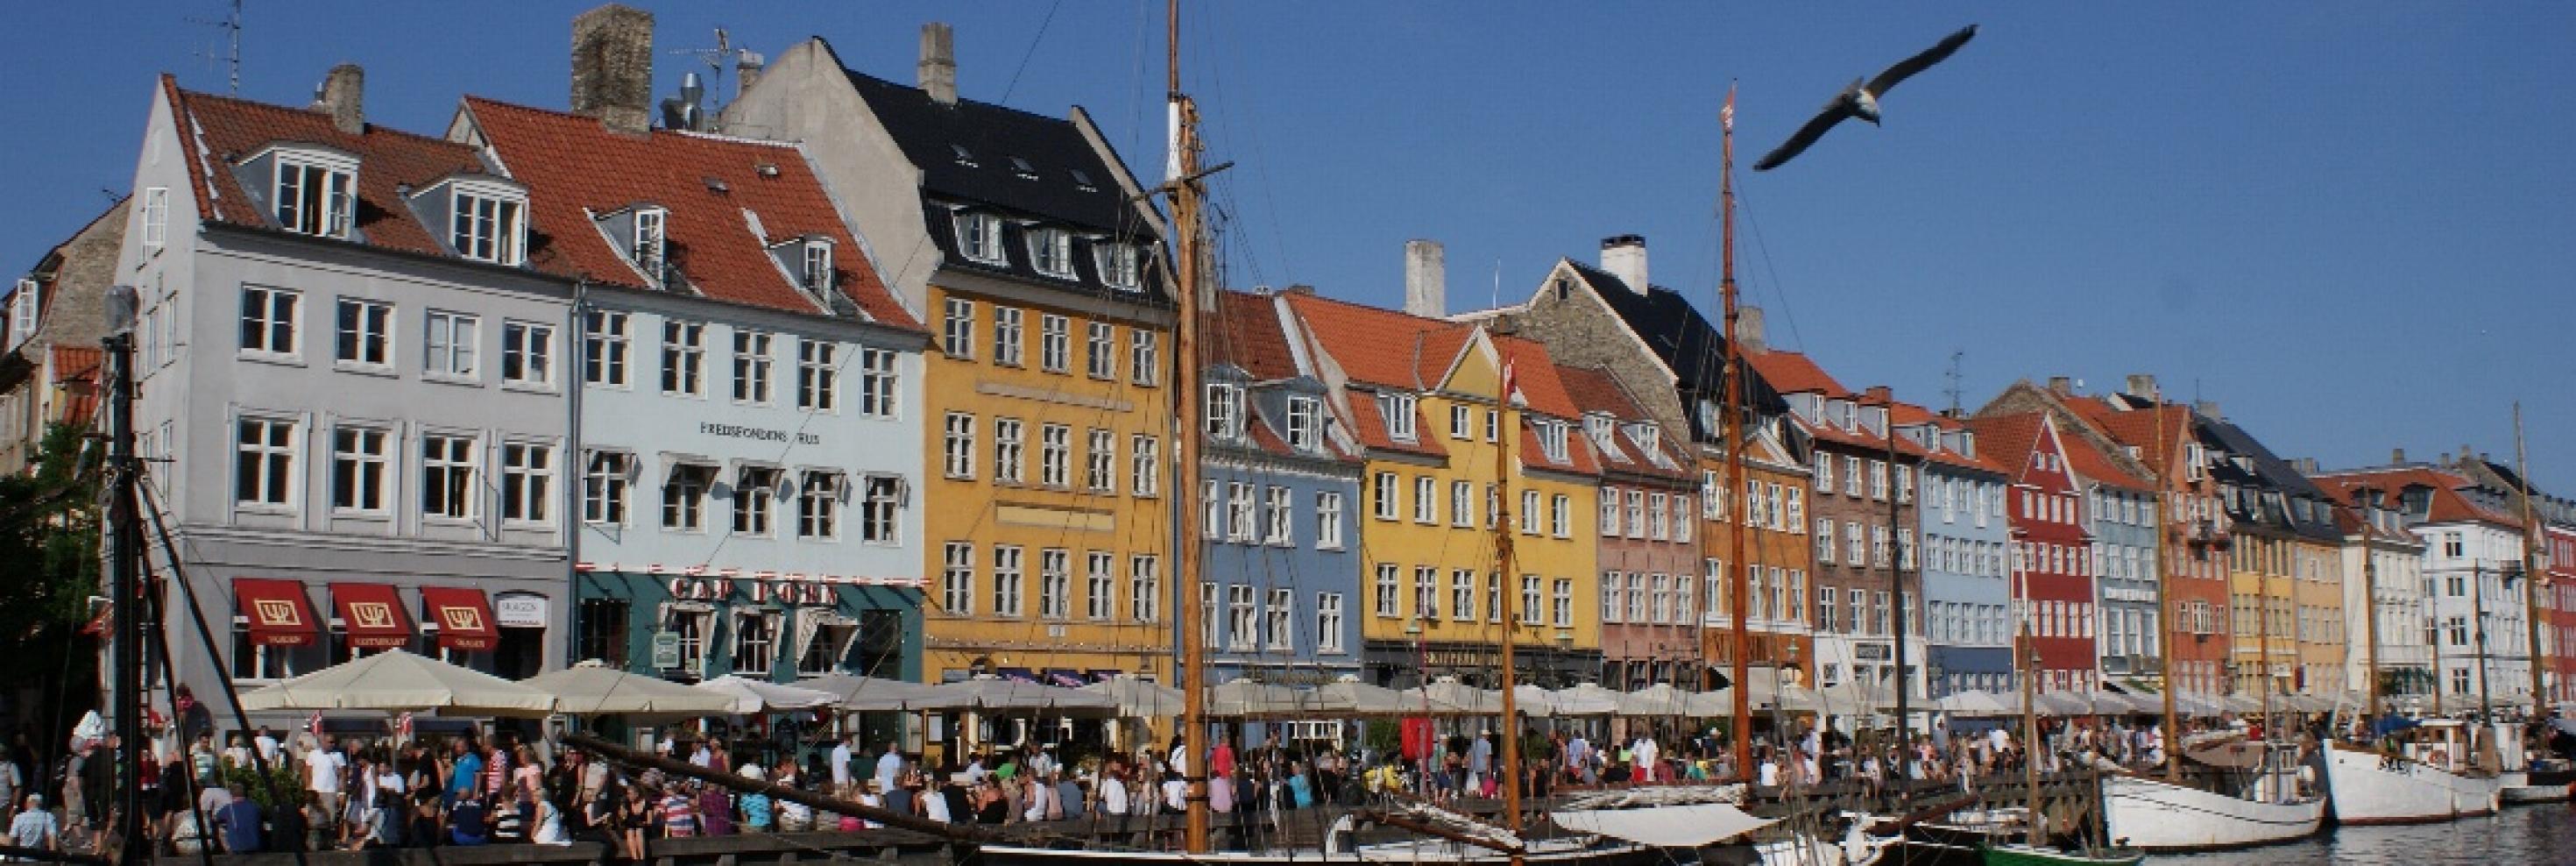 Der Nyhavn in Kopenhagen